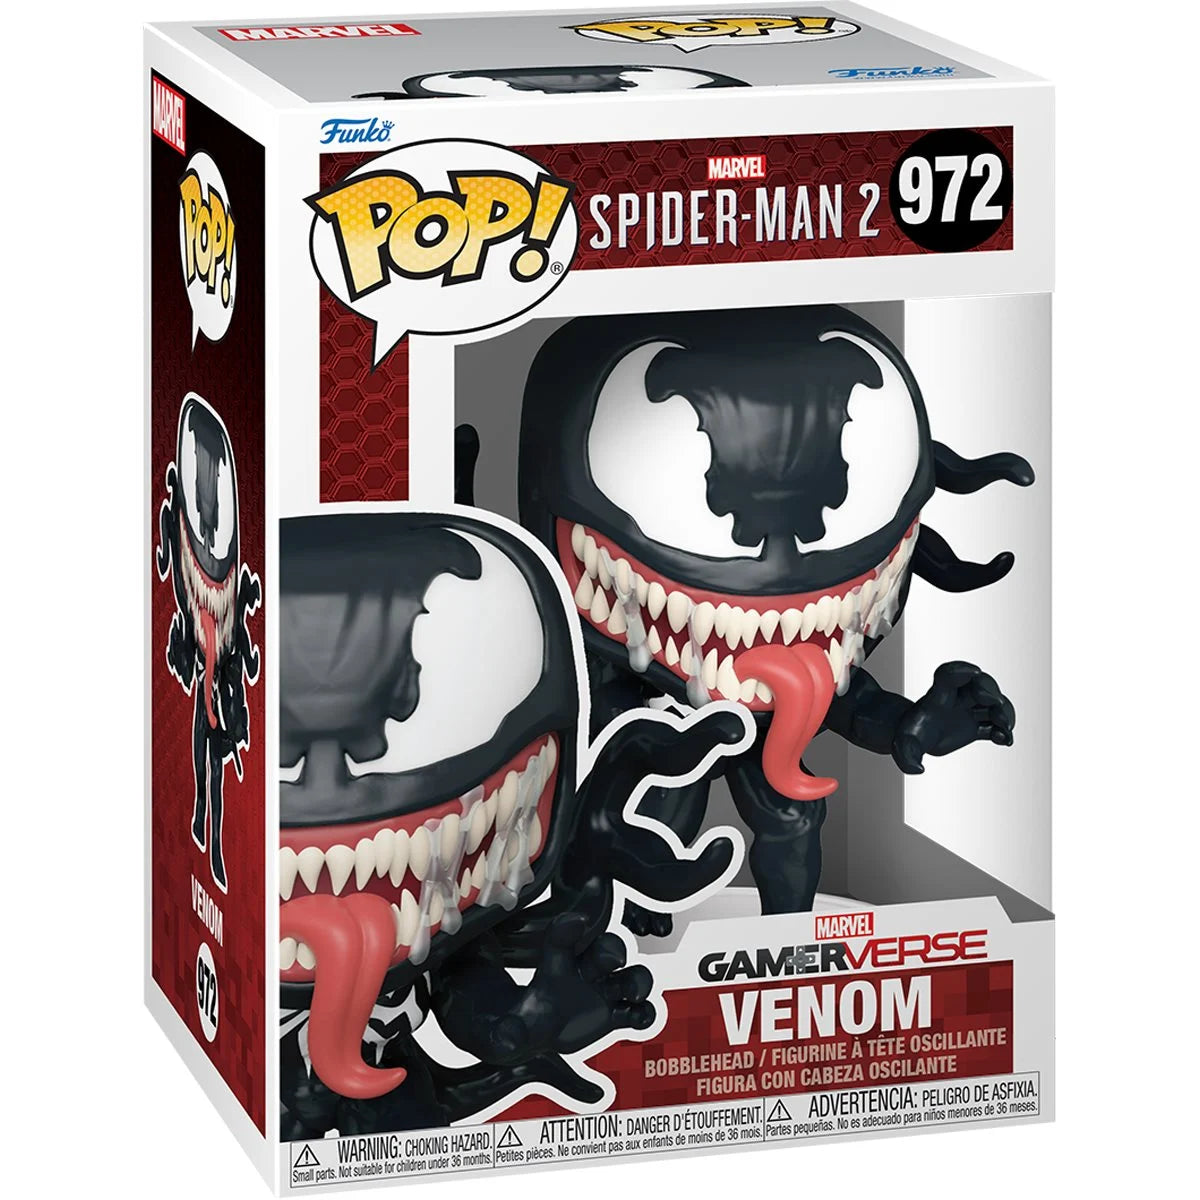 Funko Pop! Spider-Man 2 Game Venom Vinyl Figure #972